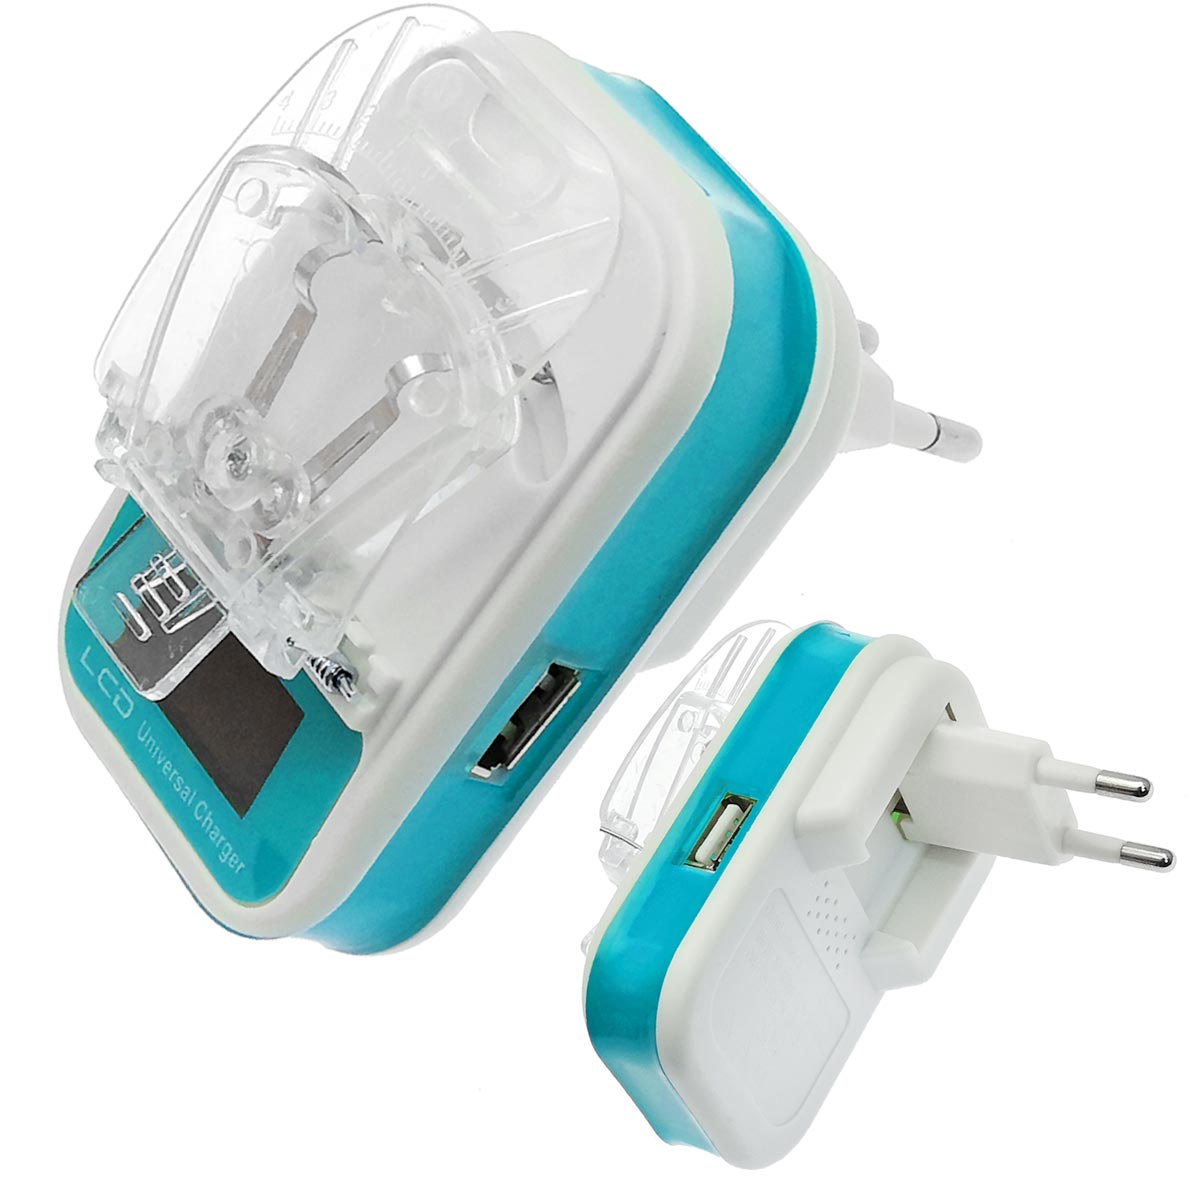 УСЗУ (универсальное сетевое зарядное устройство) LP-120 Лягушка с LCD дисплеем и USB выходом 5V-1.2A, классическая, цвет бело голубой